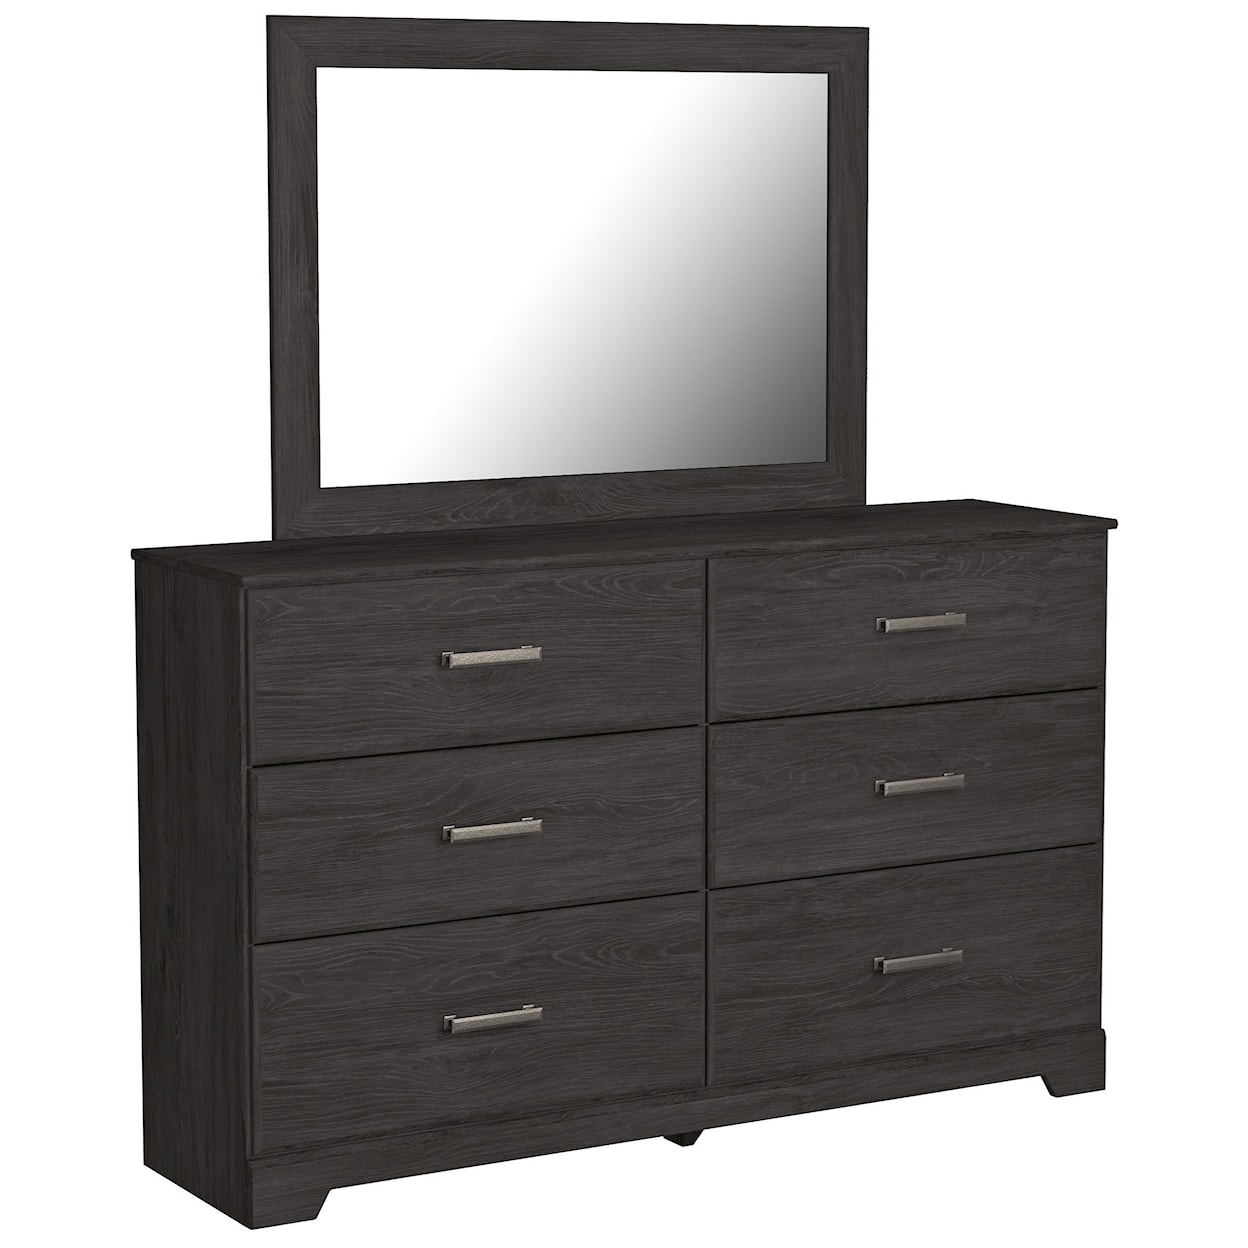 Ashley Furniture Signature Design Belachime Bedroom Mirror